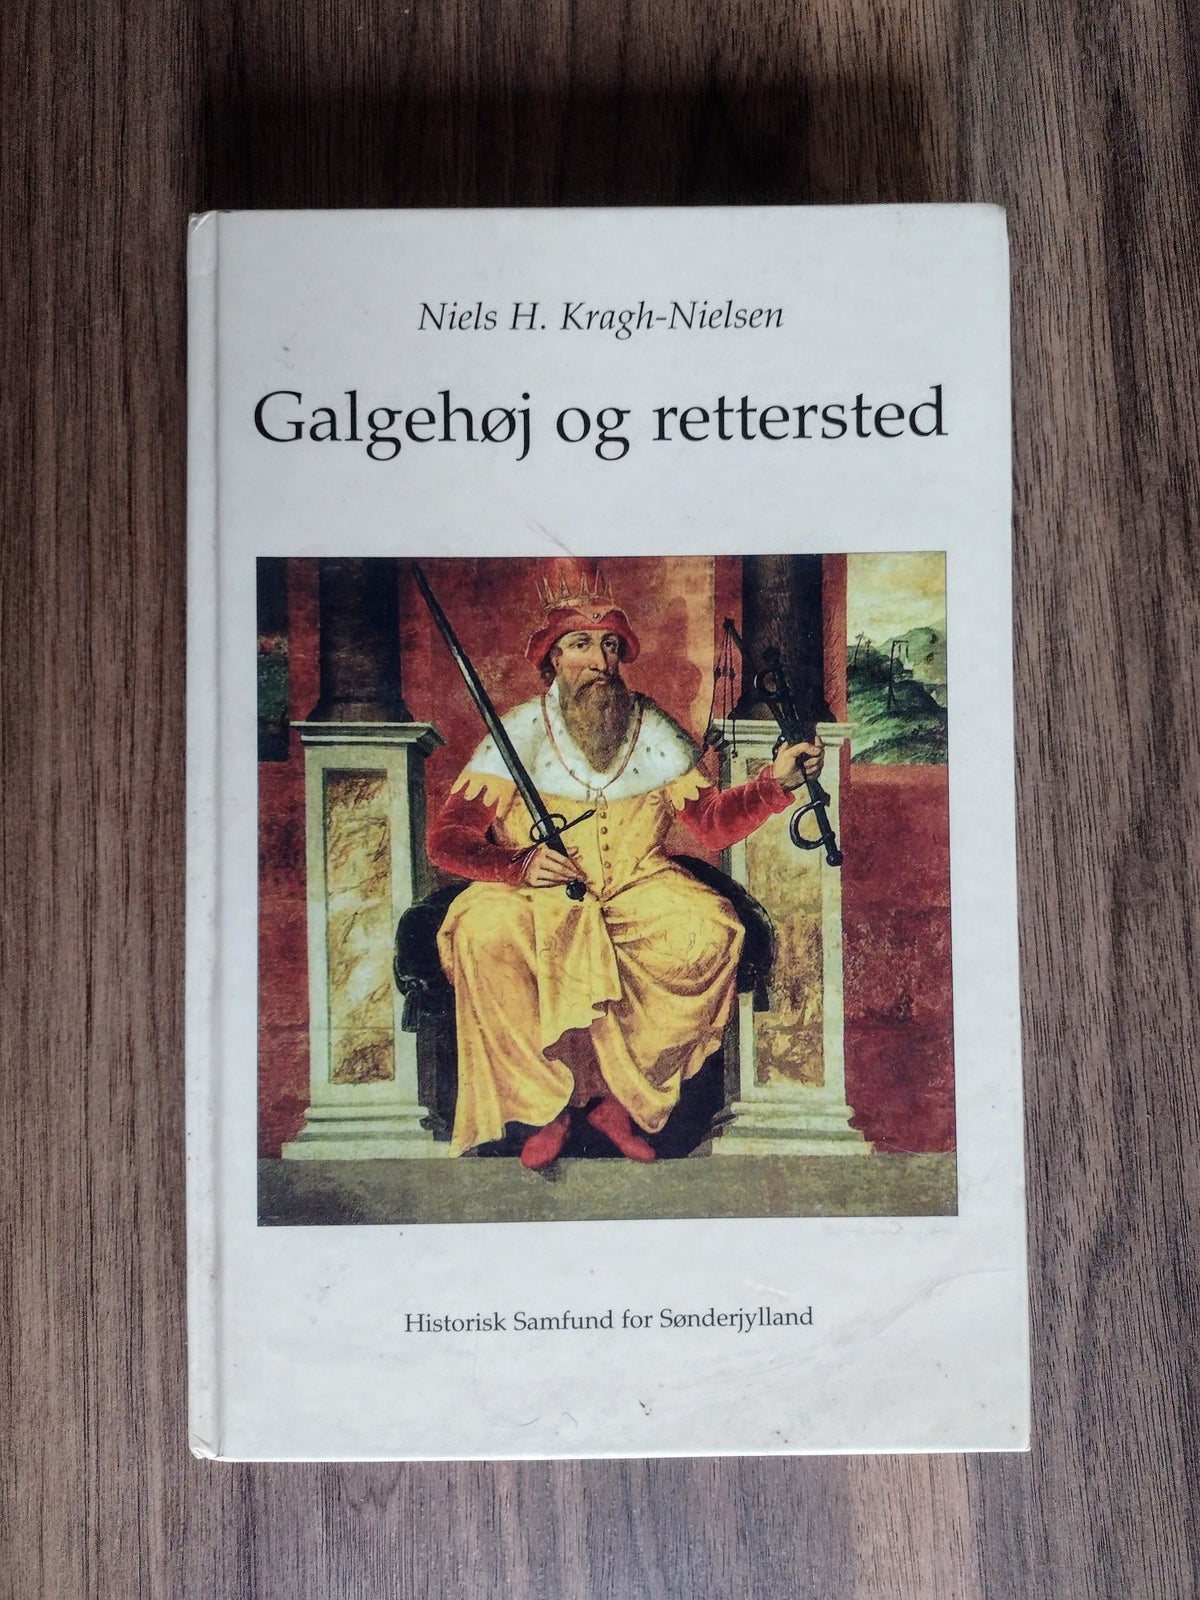 Galgehøj og rettersted, Niels H. Kragh-Nielsen, emne: